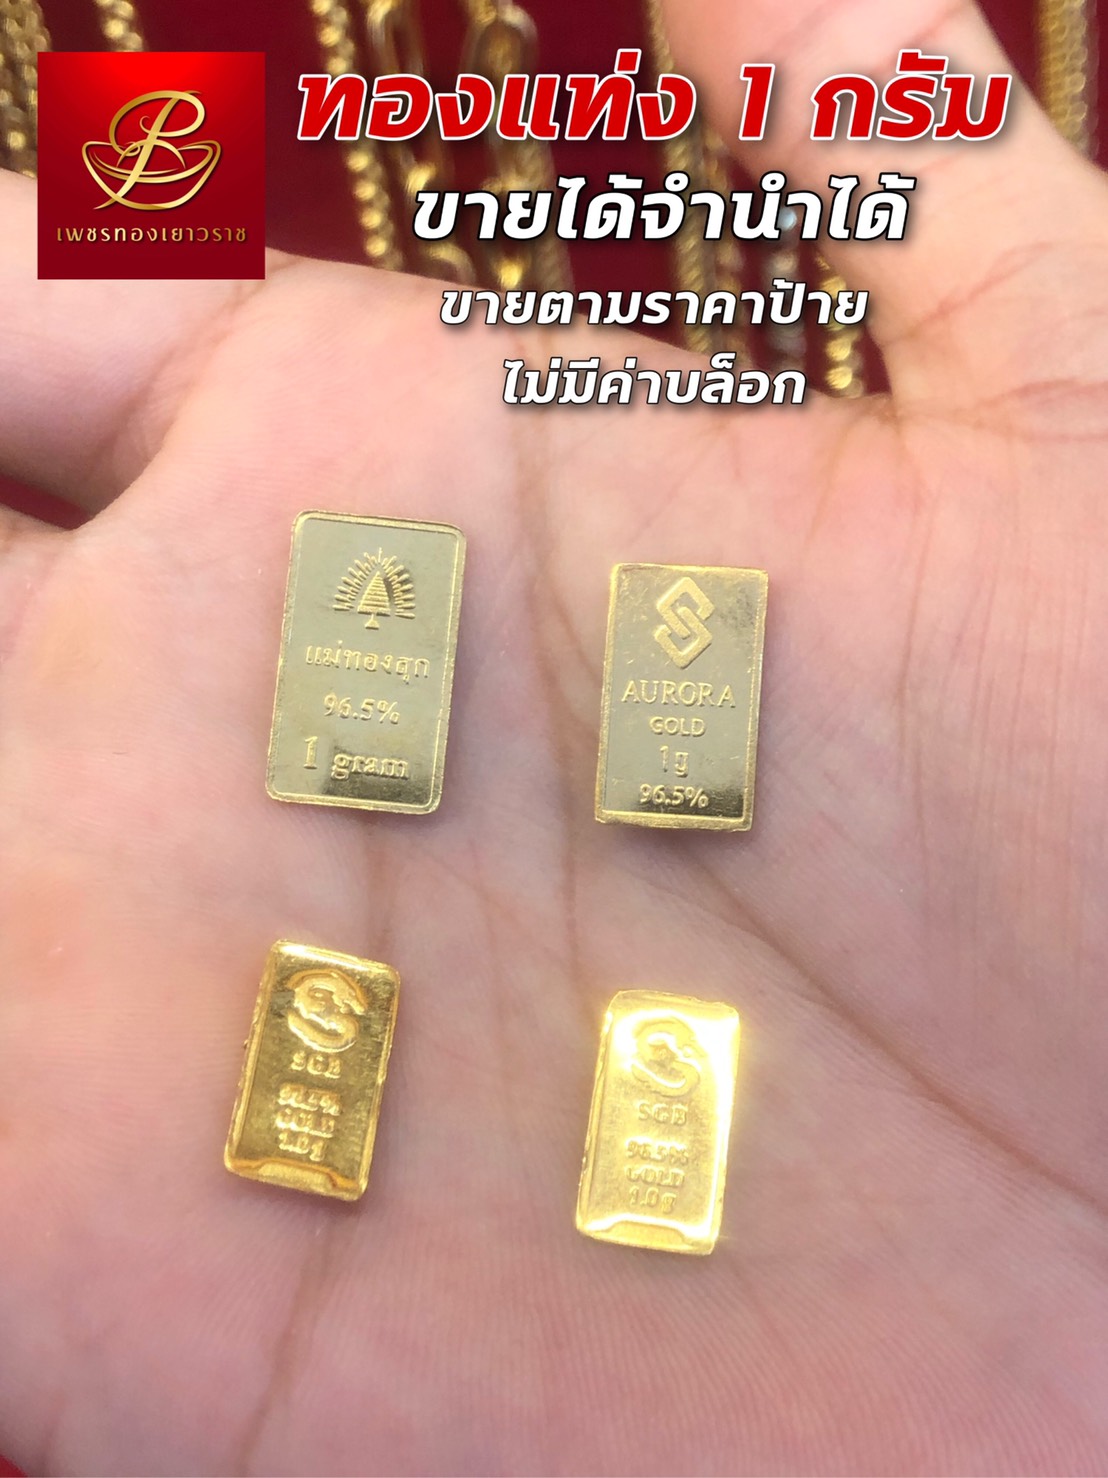 ✨ ทองแท่งทองคำแท้ 1 กรัม   ✅ ขายได้ จำนำได้ ✅ มีใบรับประกัน 🔥DiamondGolds2020✨